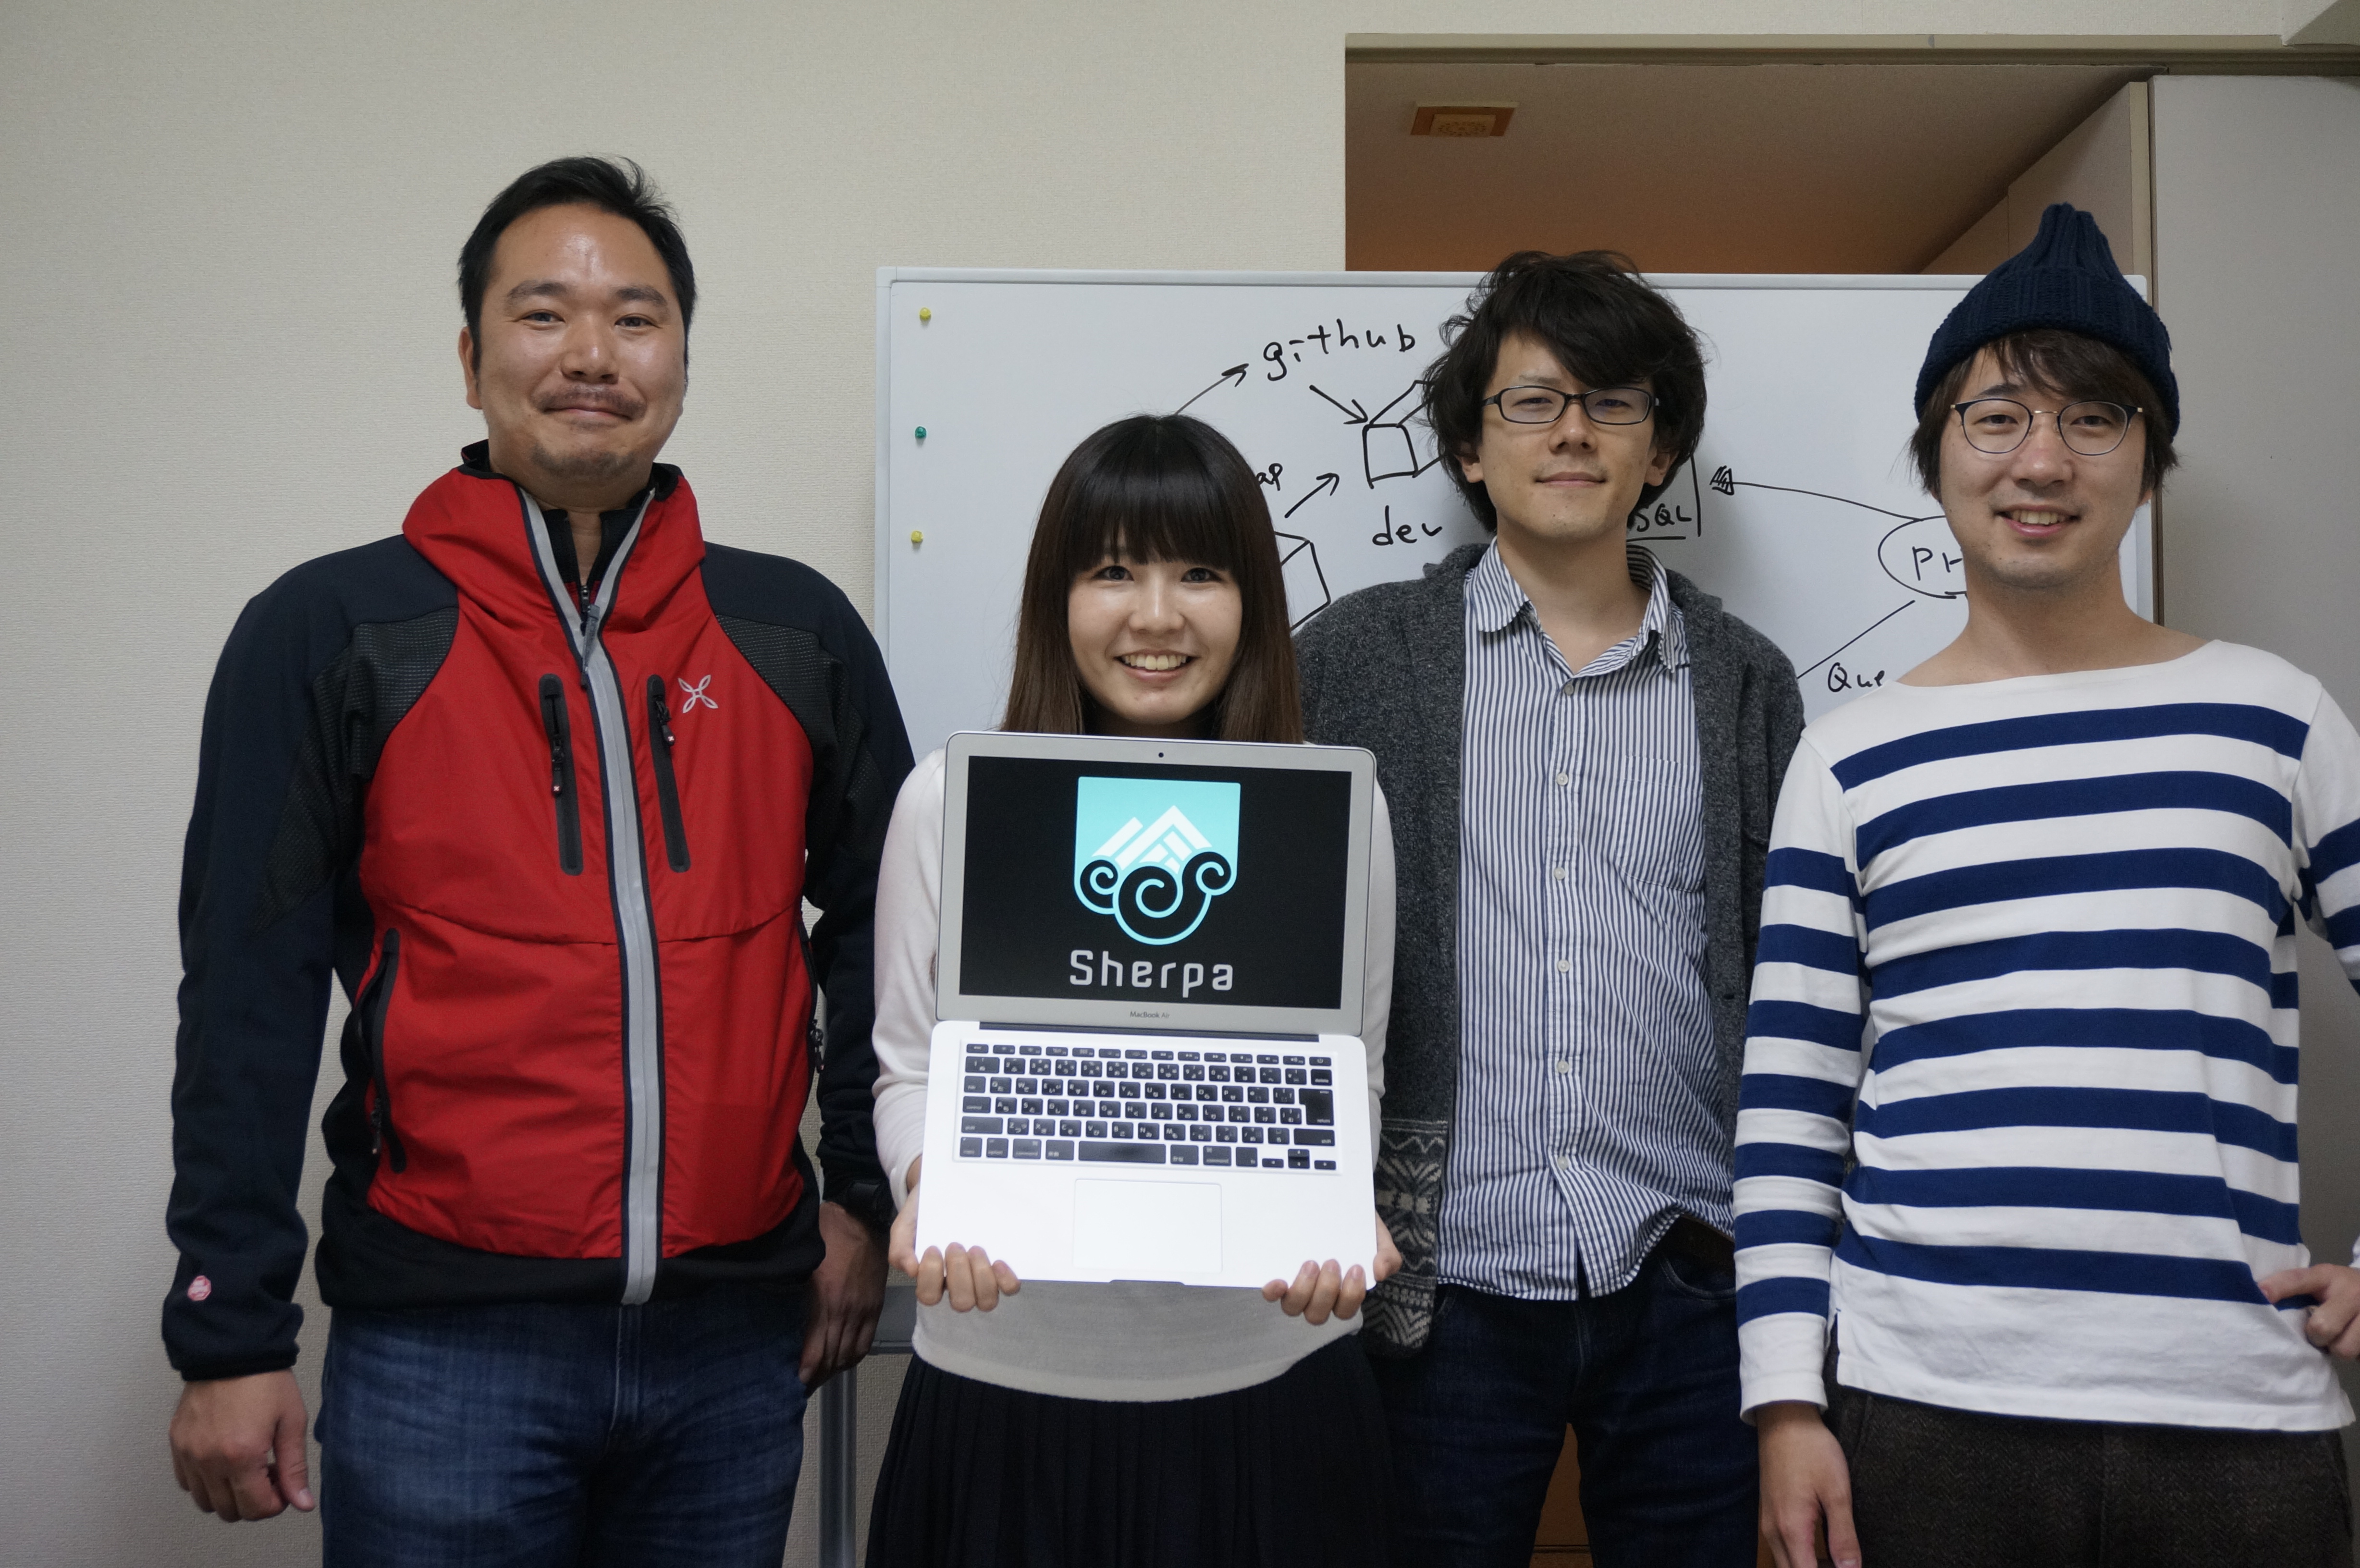 左から石井さん、角田睦美さん（27 歳）、升一元吾さん（30 歳）、窪宏二朗さん（30歳）。石井さんを除く3人はプロのエンジニアとして働くかたわら、仕事の合間を縫ってSherpaの開発に協力している